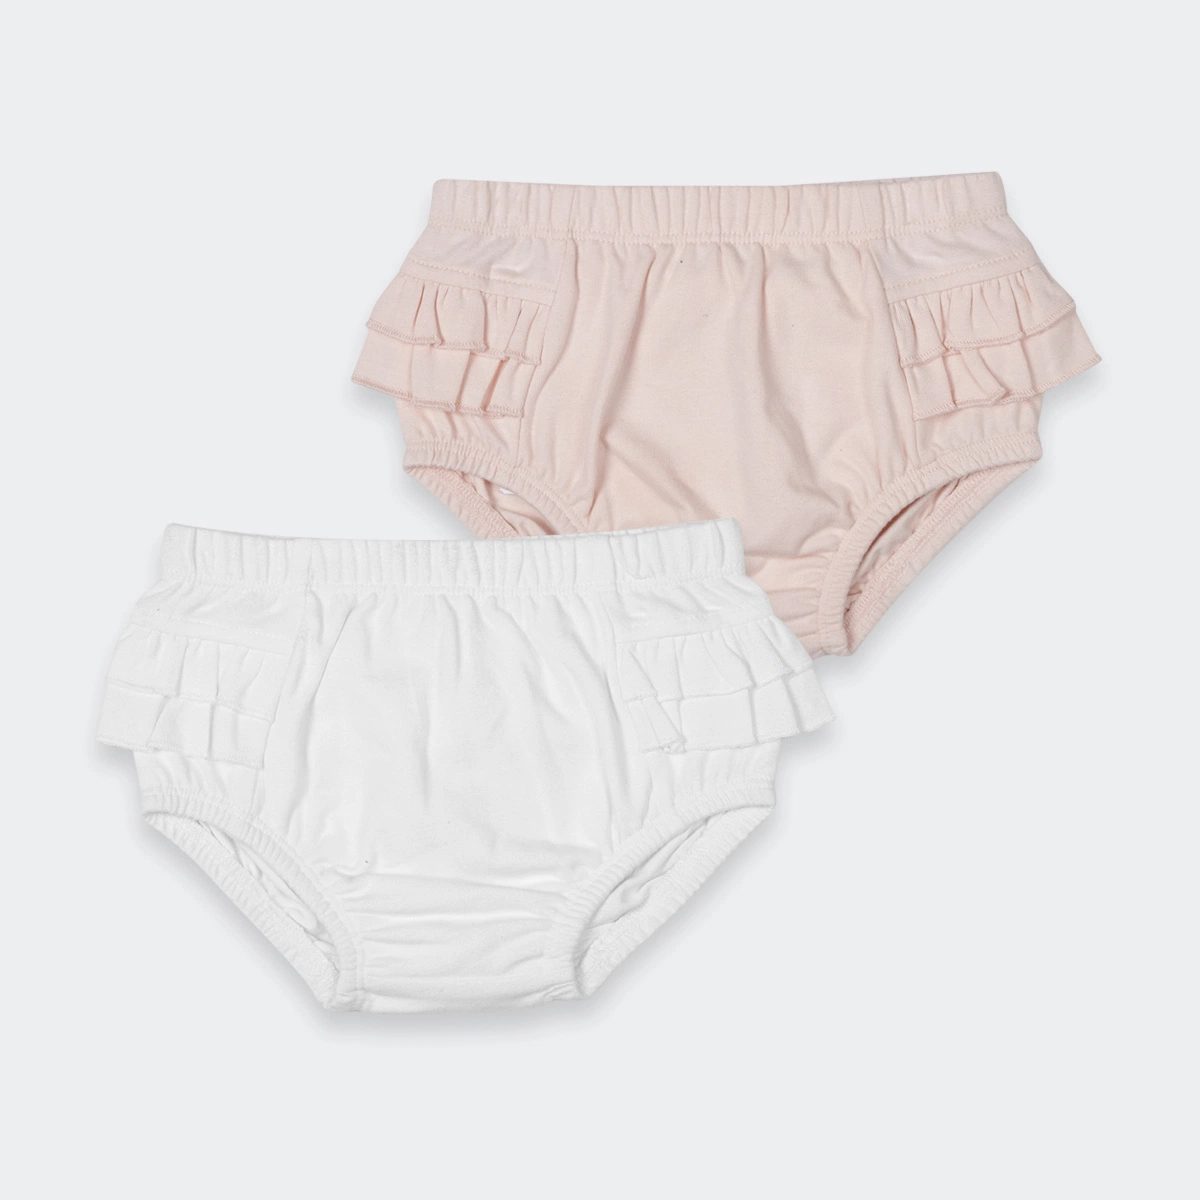 Cotton Baby Fabric Baby Bloomer Underwear Briefs